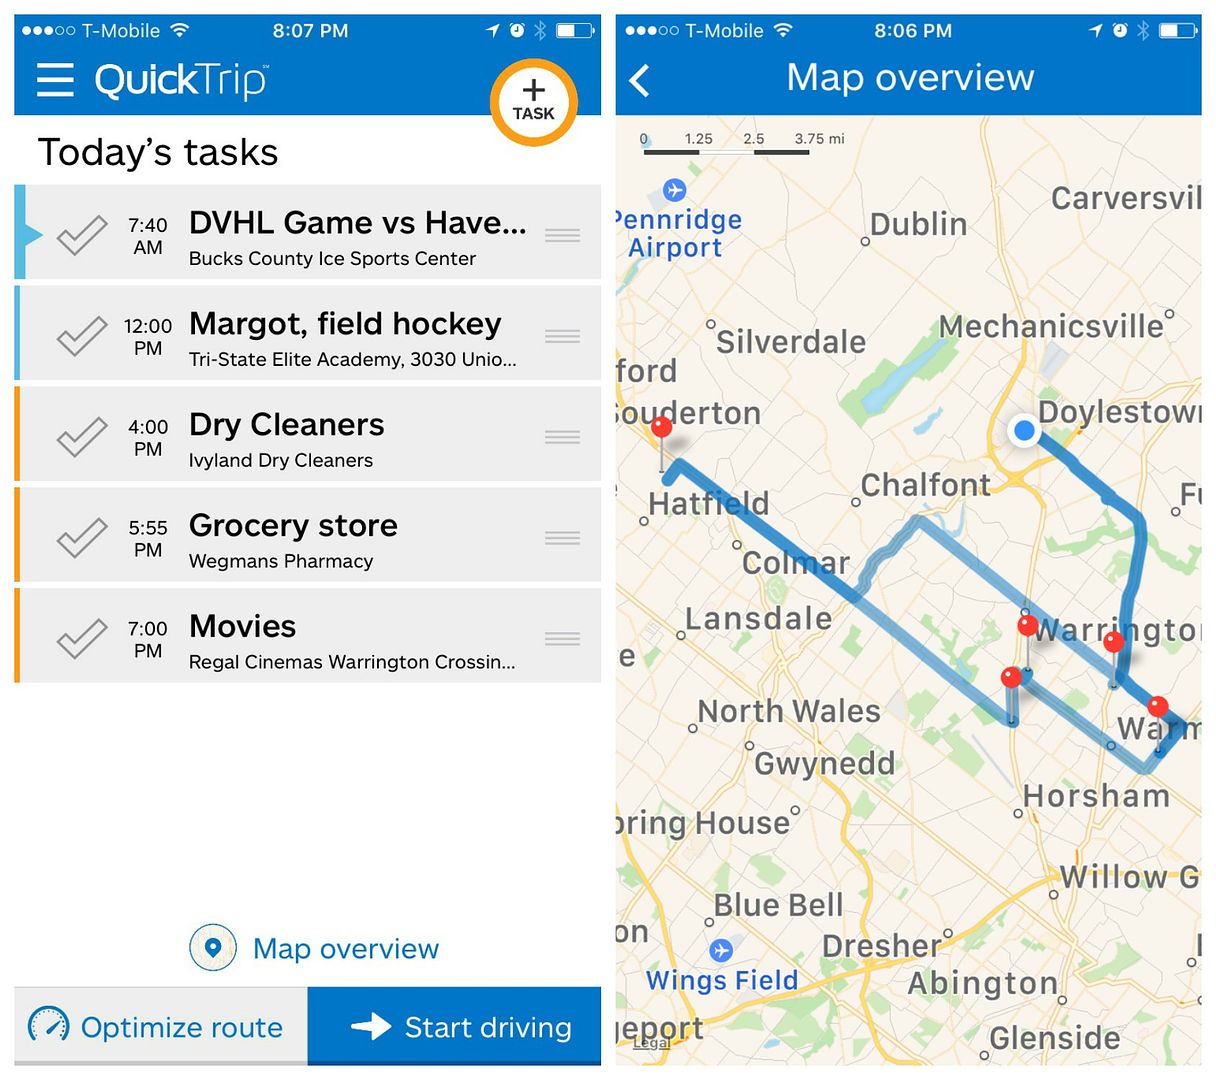 aplikace QuickTrip optimalizuje váš seznam úkolů a poskytuje vám nejchytřejší trasy, které vám pomohou ušetřit čas